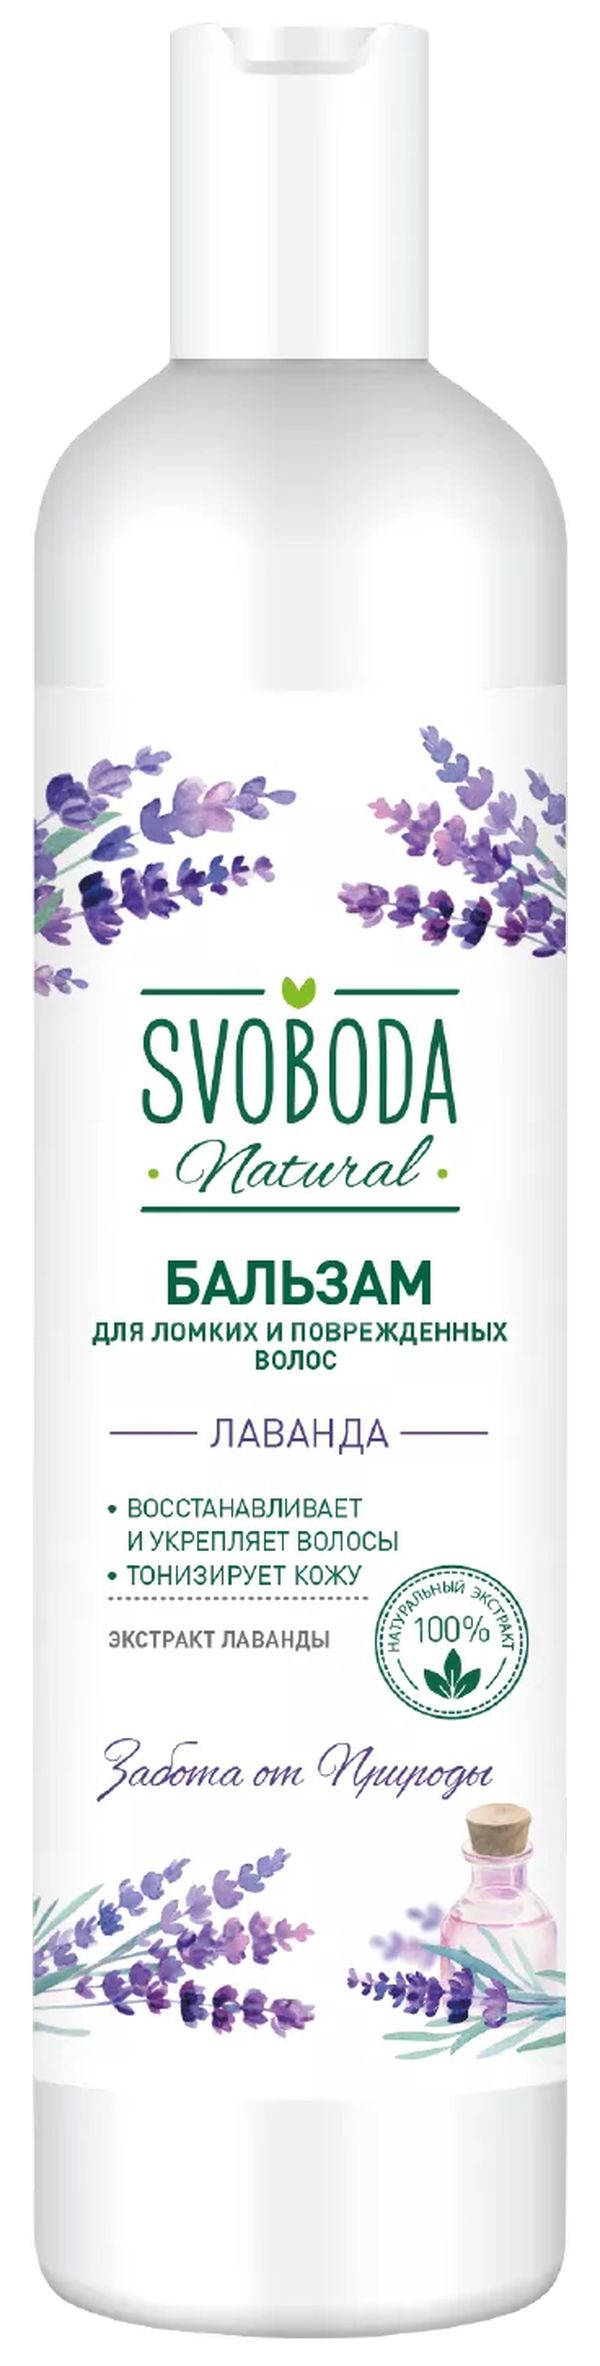 Бальзам-ополаскиватель Svoboda Natural для ломких и поврежденных волос 430мл оттеночный бальзам для волос organic shop masterpiece lavender pixie 100 мл